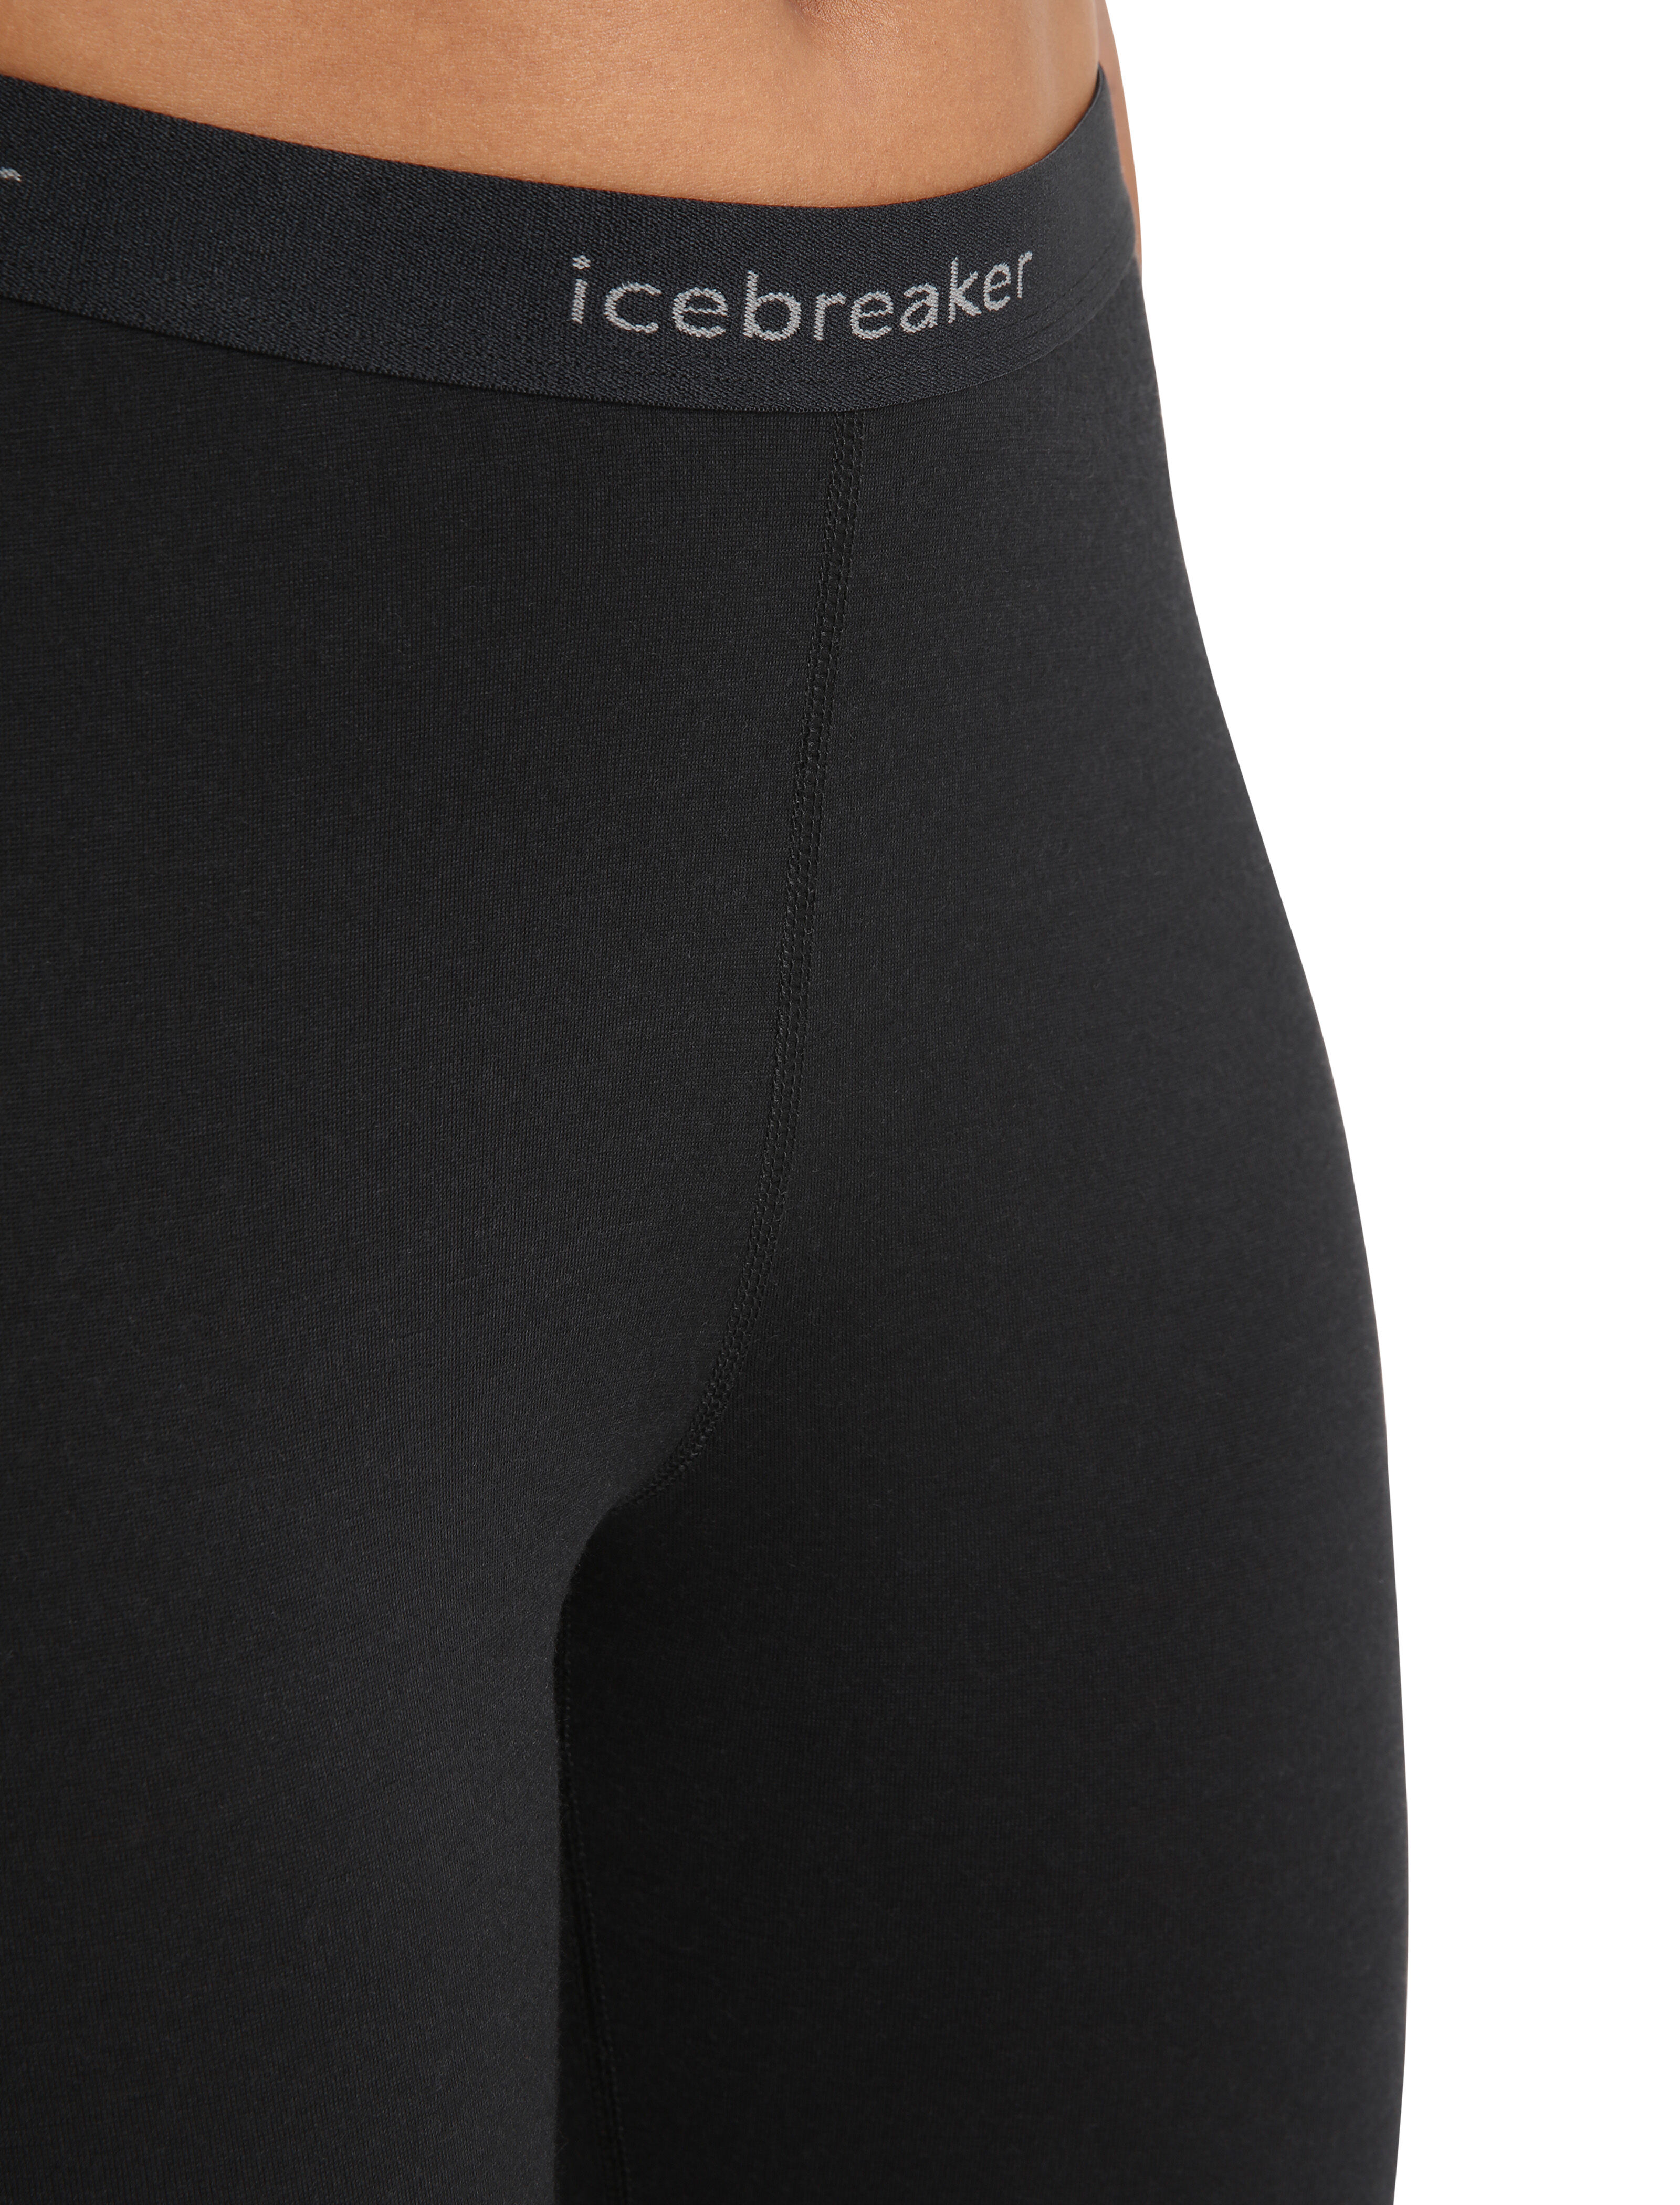 Icebreaker 200 Oasis Legless Women's Leggings Teal/Kingfisher/Dew 